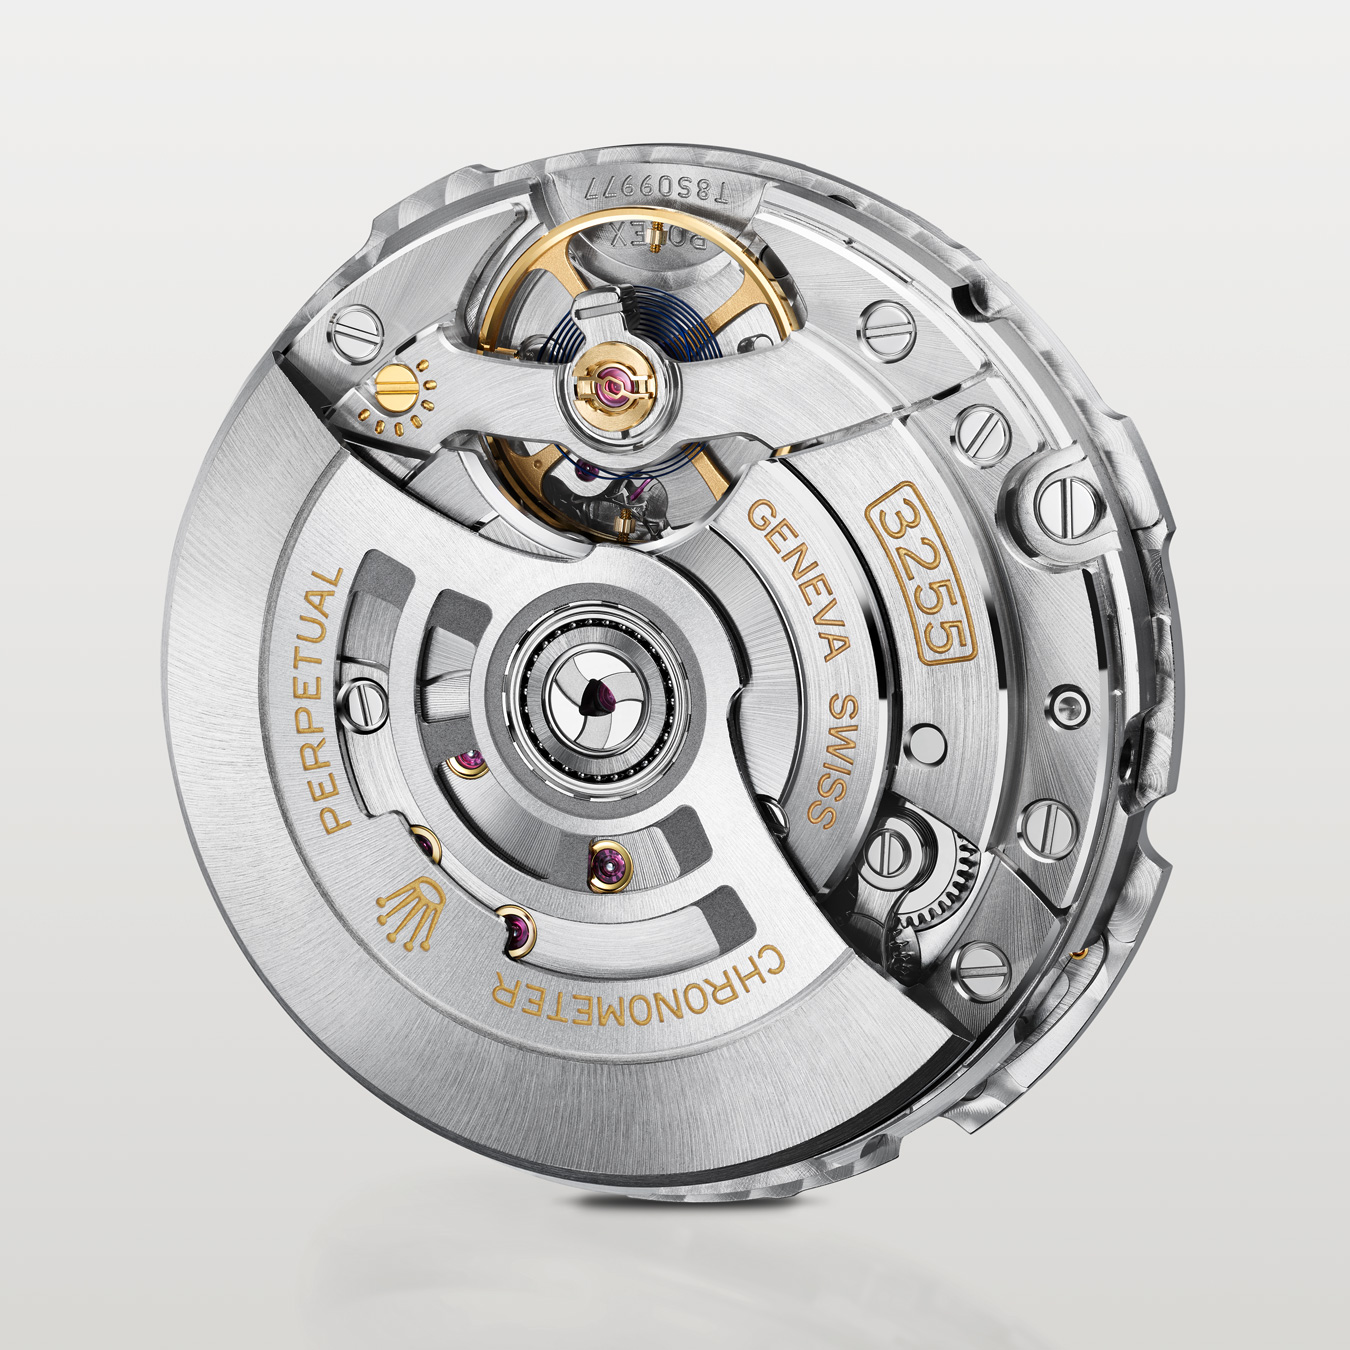 Rolex Calibre 3255 Perpetual movement